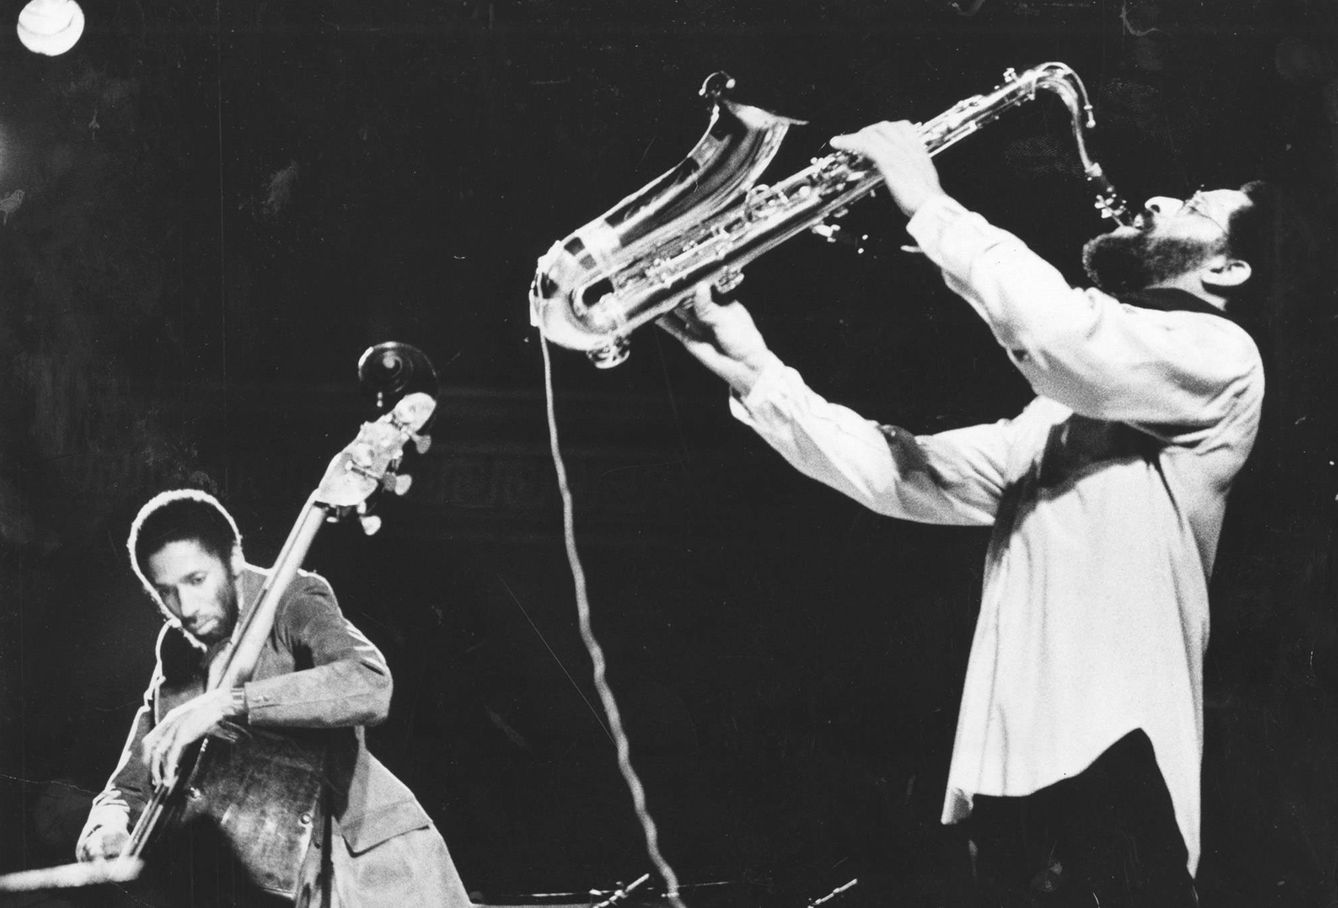 Carter con Sonny Rollins, durante una gira americana en 1978 junto a McCoy Tyner al piano y Al Foster en la percusión. (Foto: Getty)